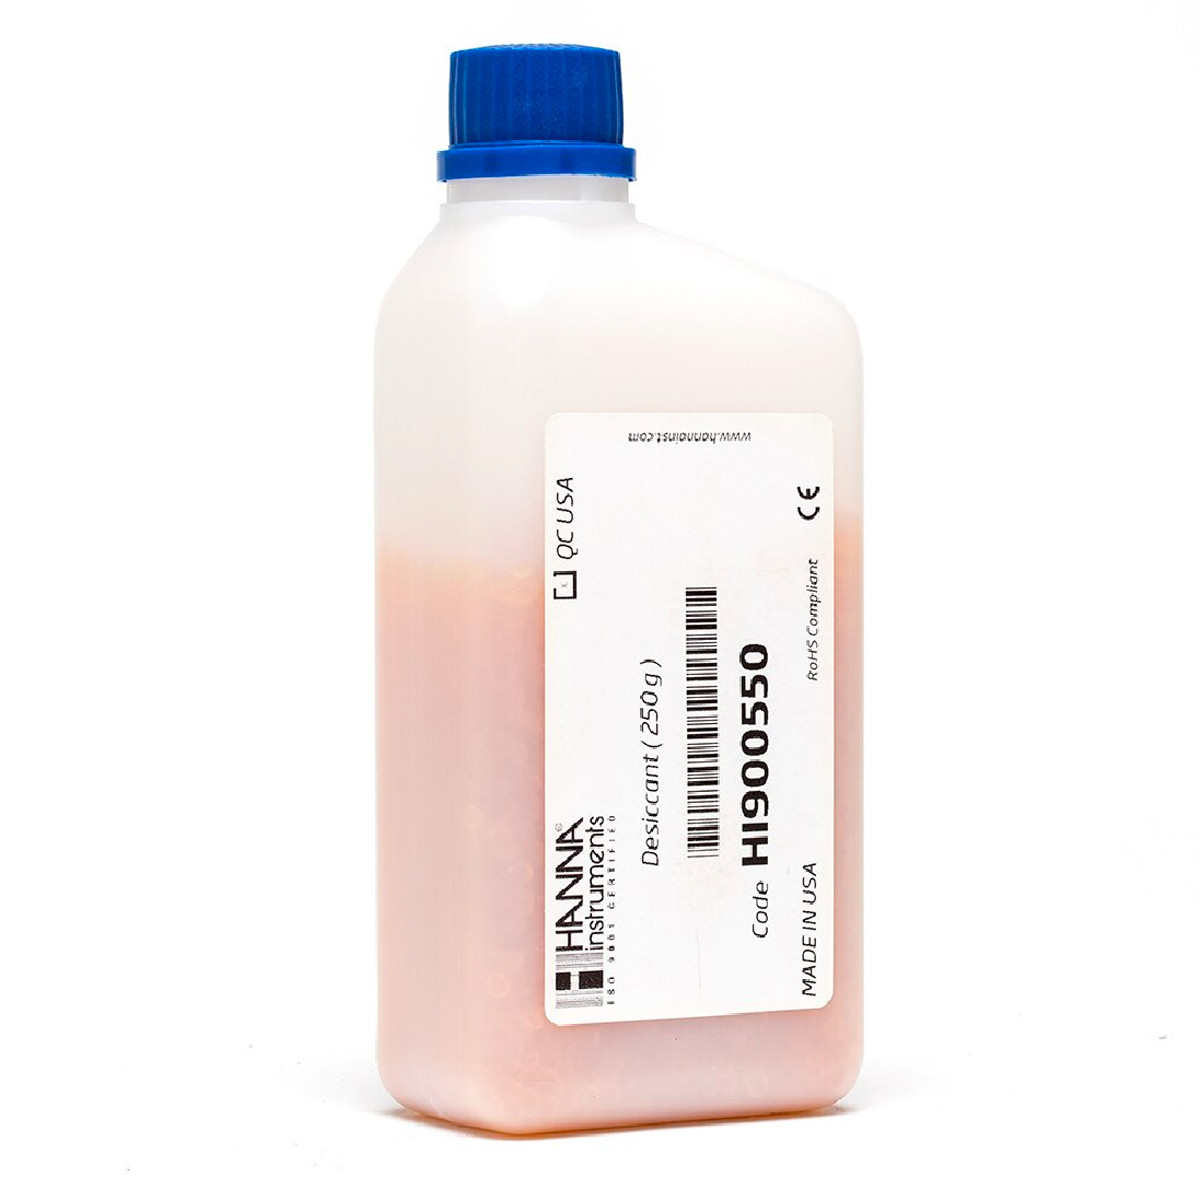 Phụ kiện cho máy chuẩn độ độ ẩm HI933-02: Chất hút ẩm silica gel HI900550, 250 gram/chai (Hàng mới 100%) HI900550